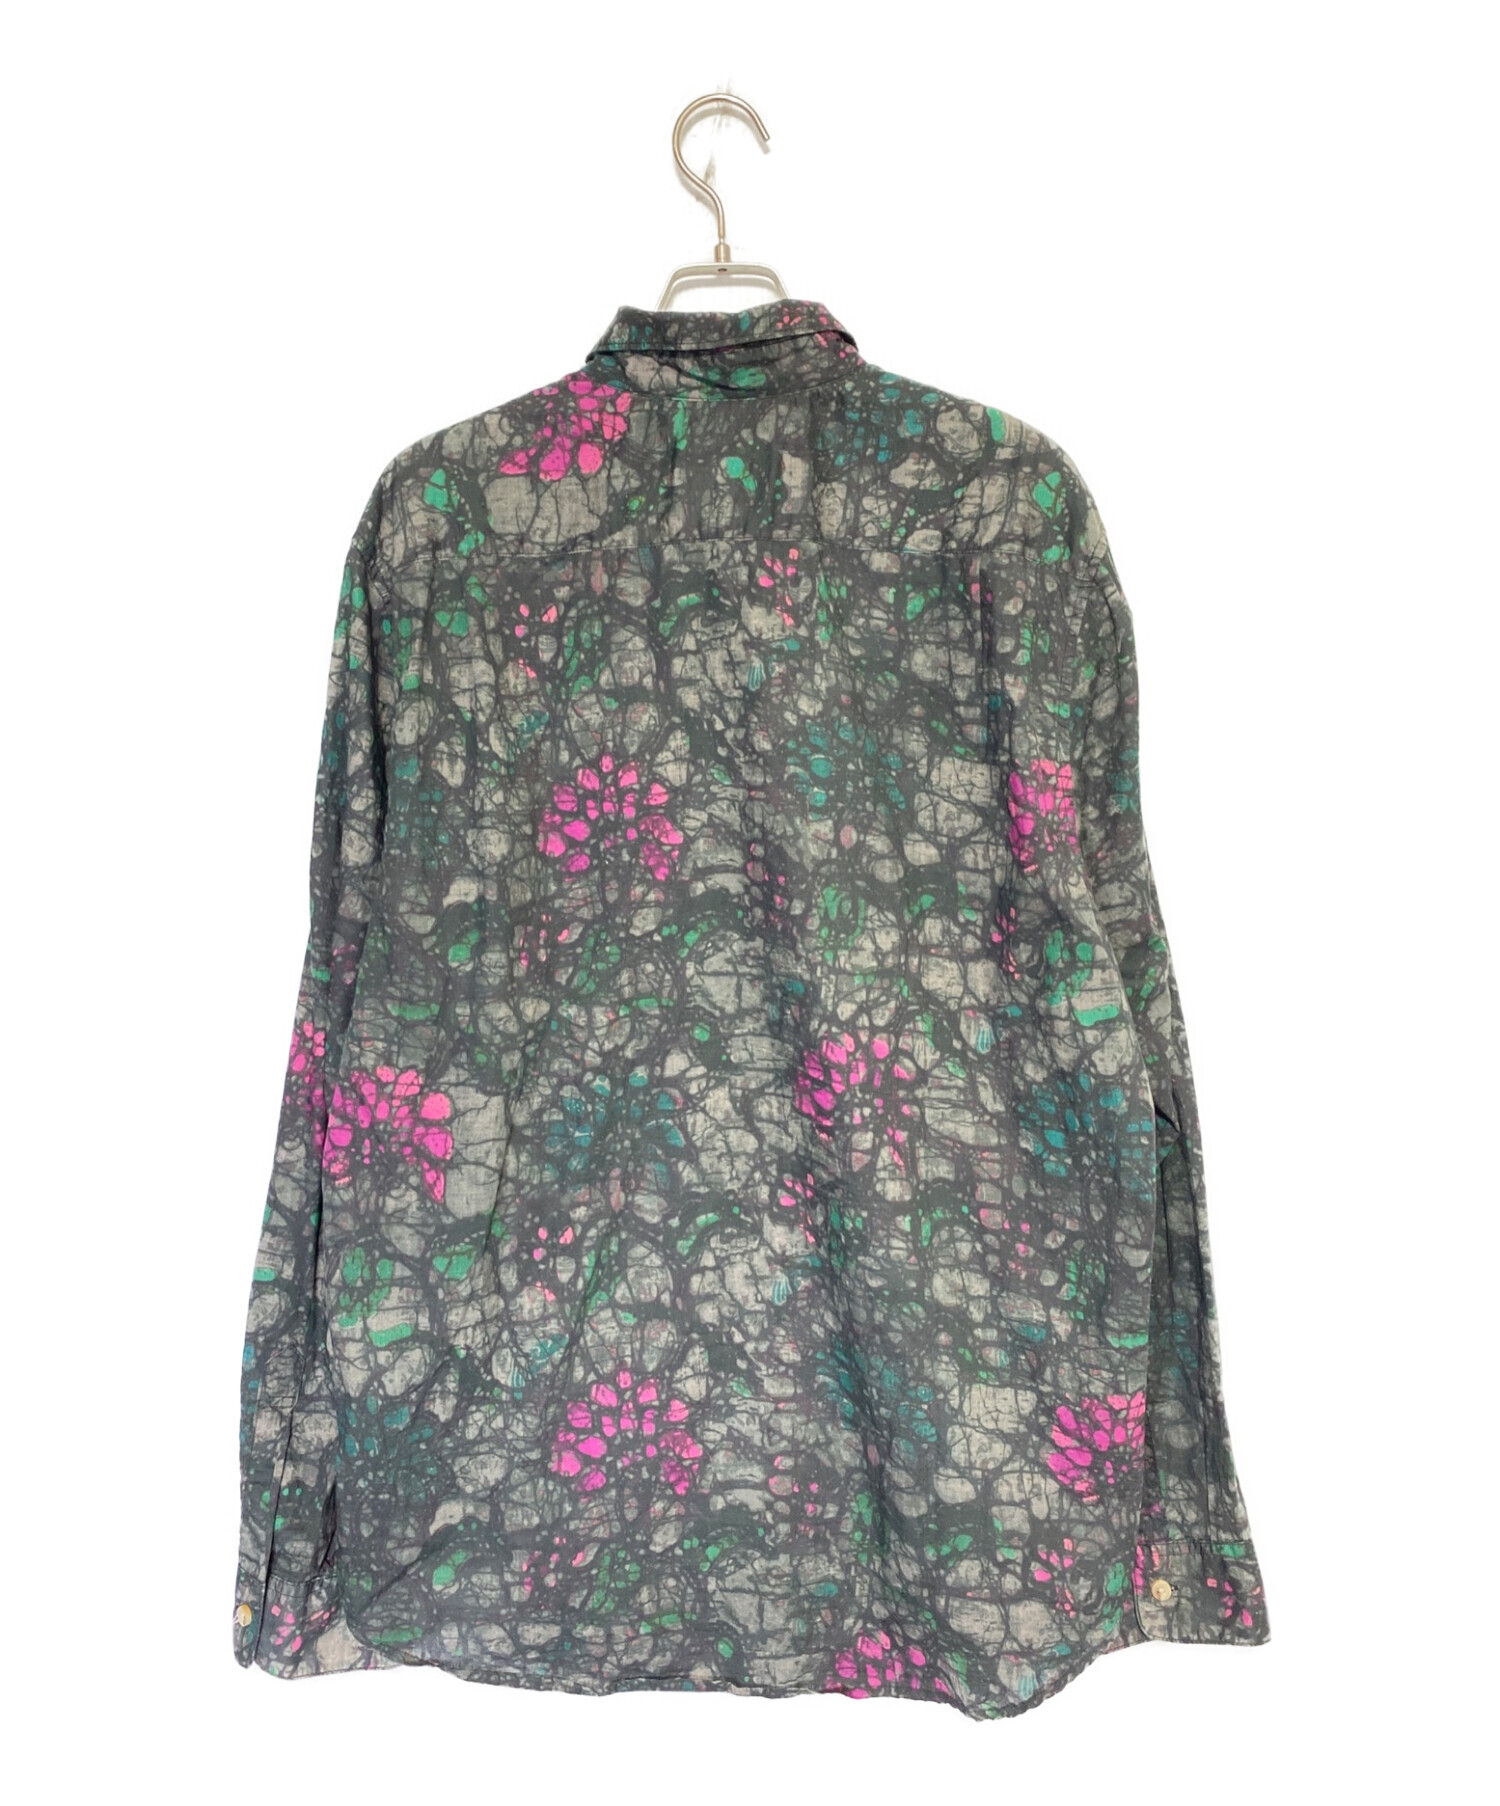 SUPREME (シュプリーム) Acid Floral Shirt グリーン サイズ:XL